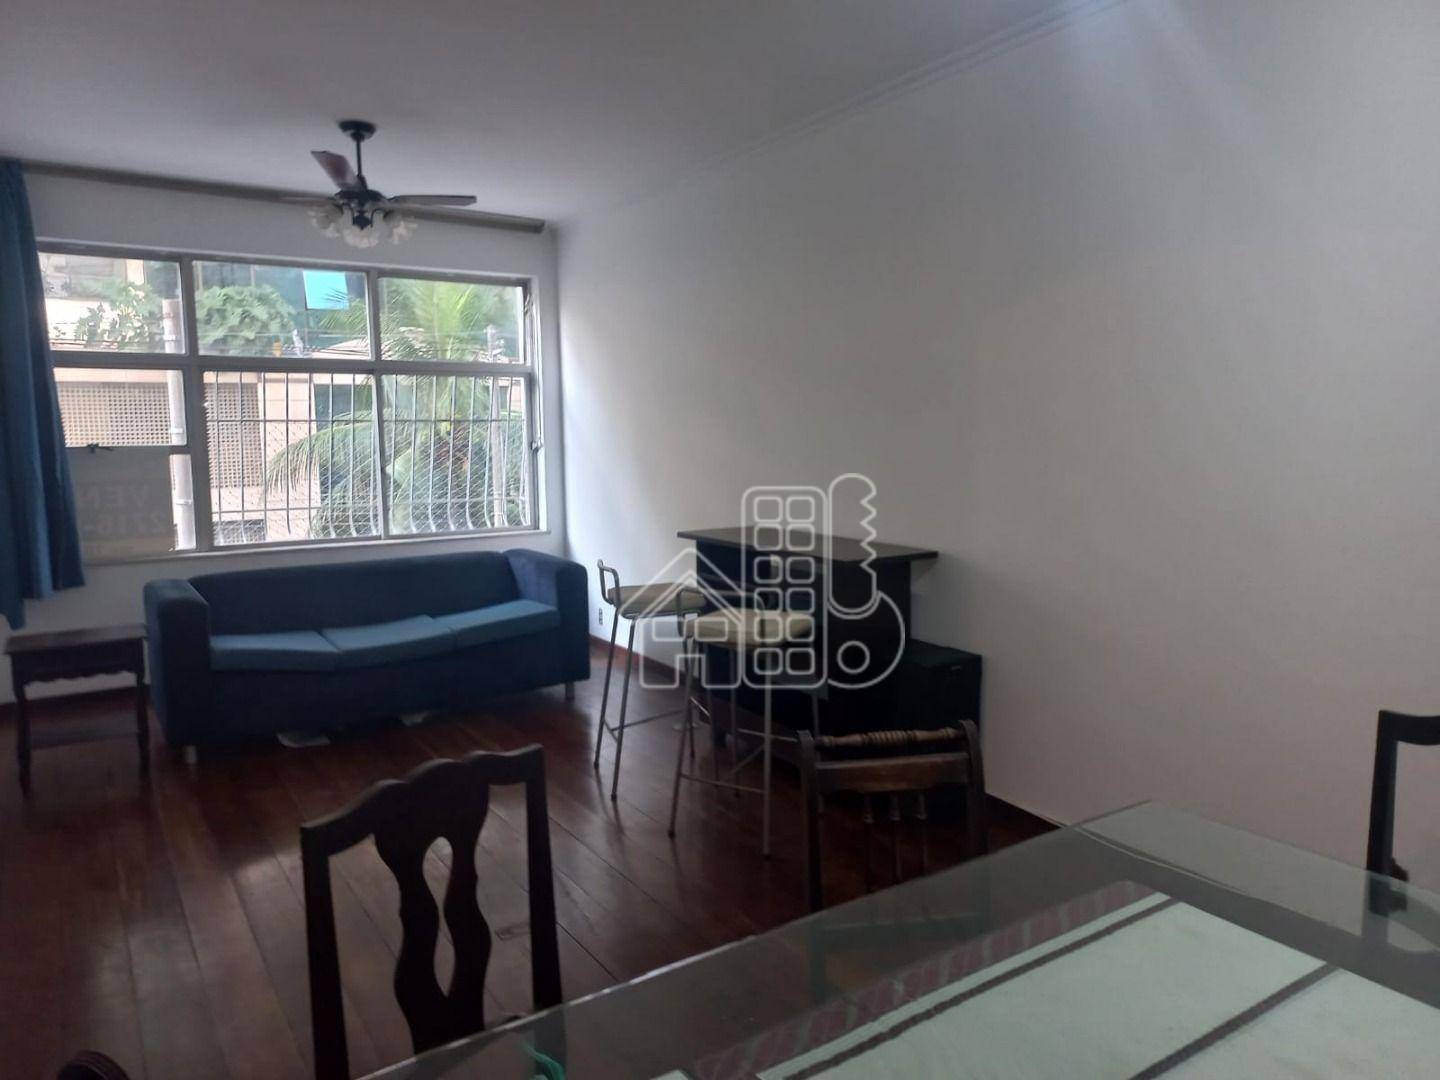 Apartamento com 4 dormitórios à venda, 180 m² por R$ 1.200.000,00 - Icaraí - Niterói/RJ